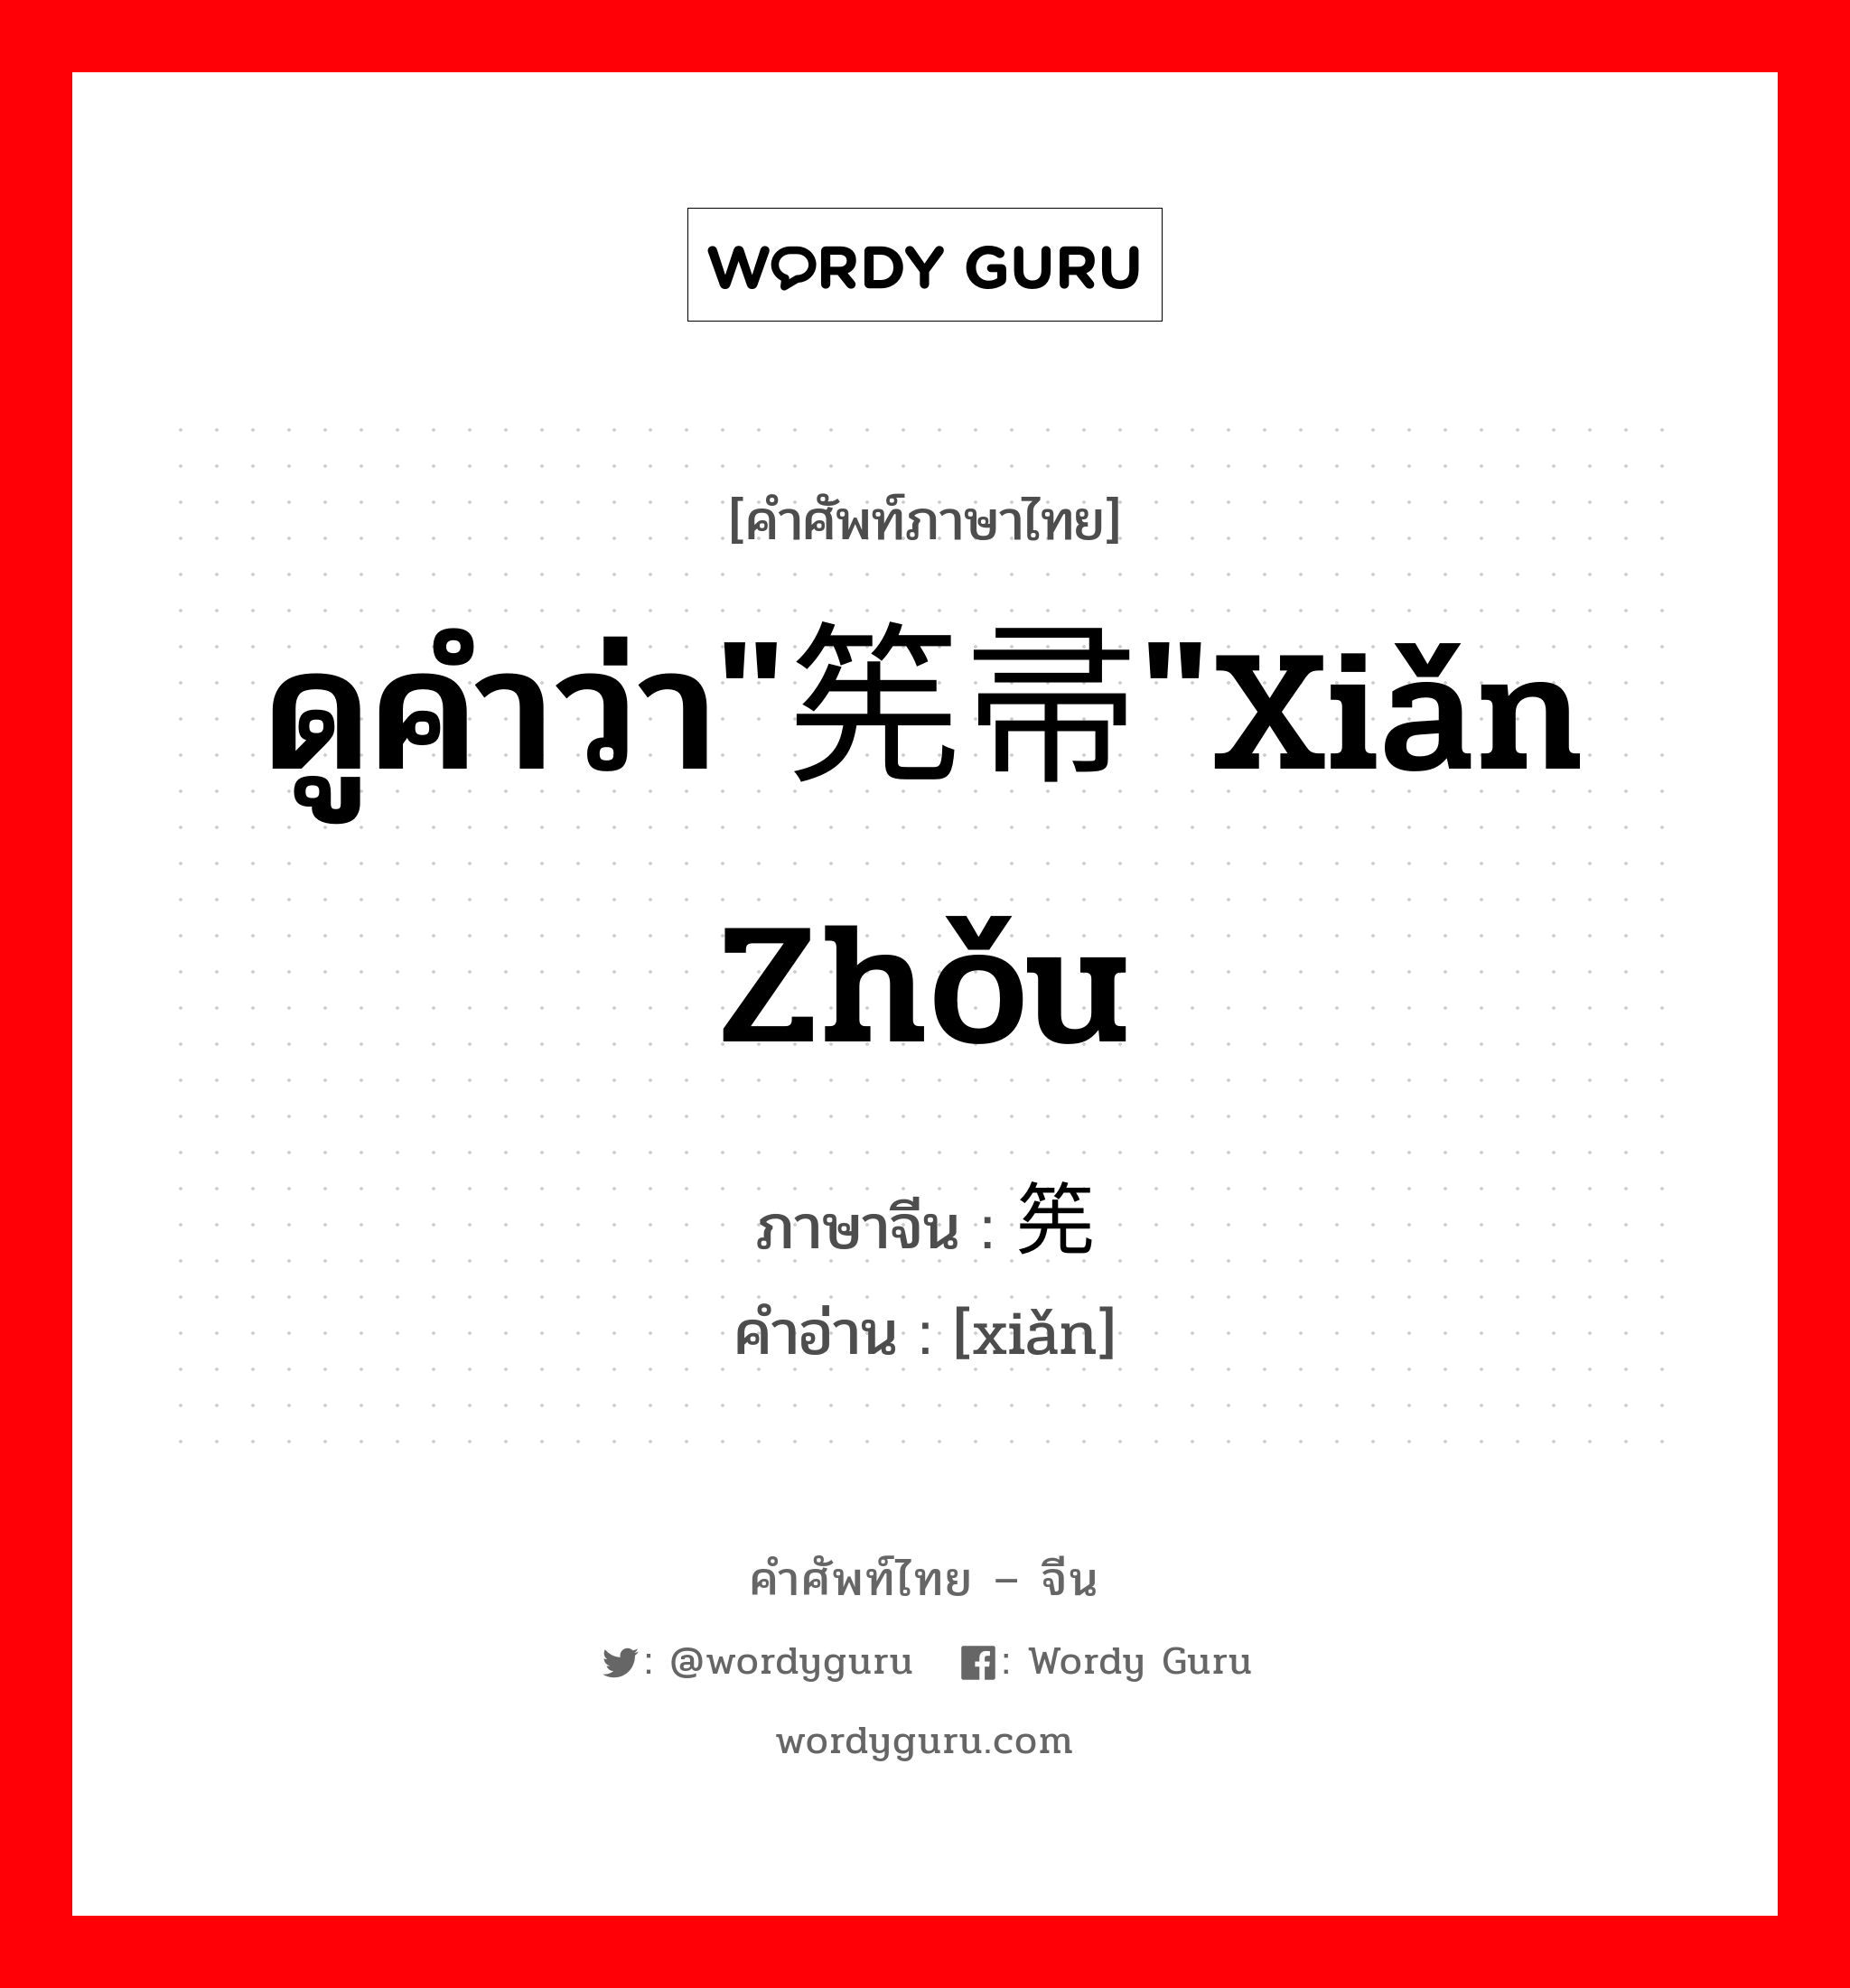 ดูคำว่า"筅帚"xiǎn zhǒu ภาษาจีนคืออะไร, คำศัพท์ภาษาไทย - จีน ดูคำว่า"筅帚"xiǎn zhǒu ภาษาจีน 筅 คำอ่าน [xiǎn]